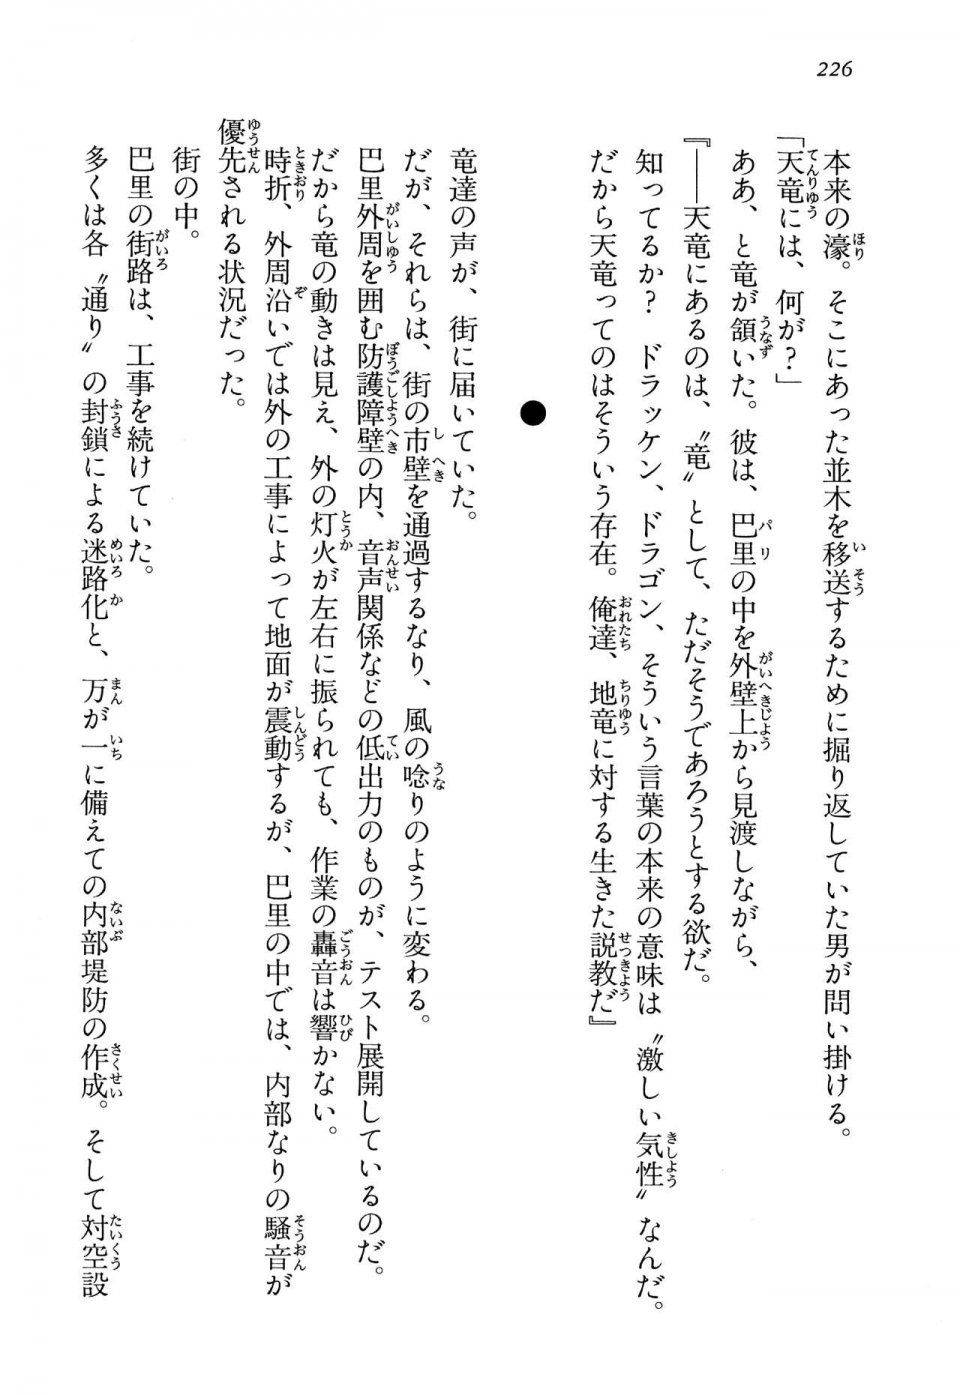 Kyoukai Senjou no Horizon LN Vol 13(6A) - Photo #226